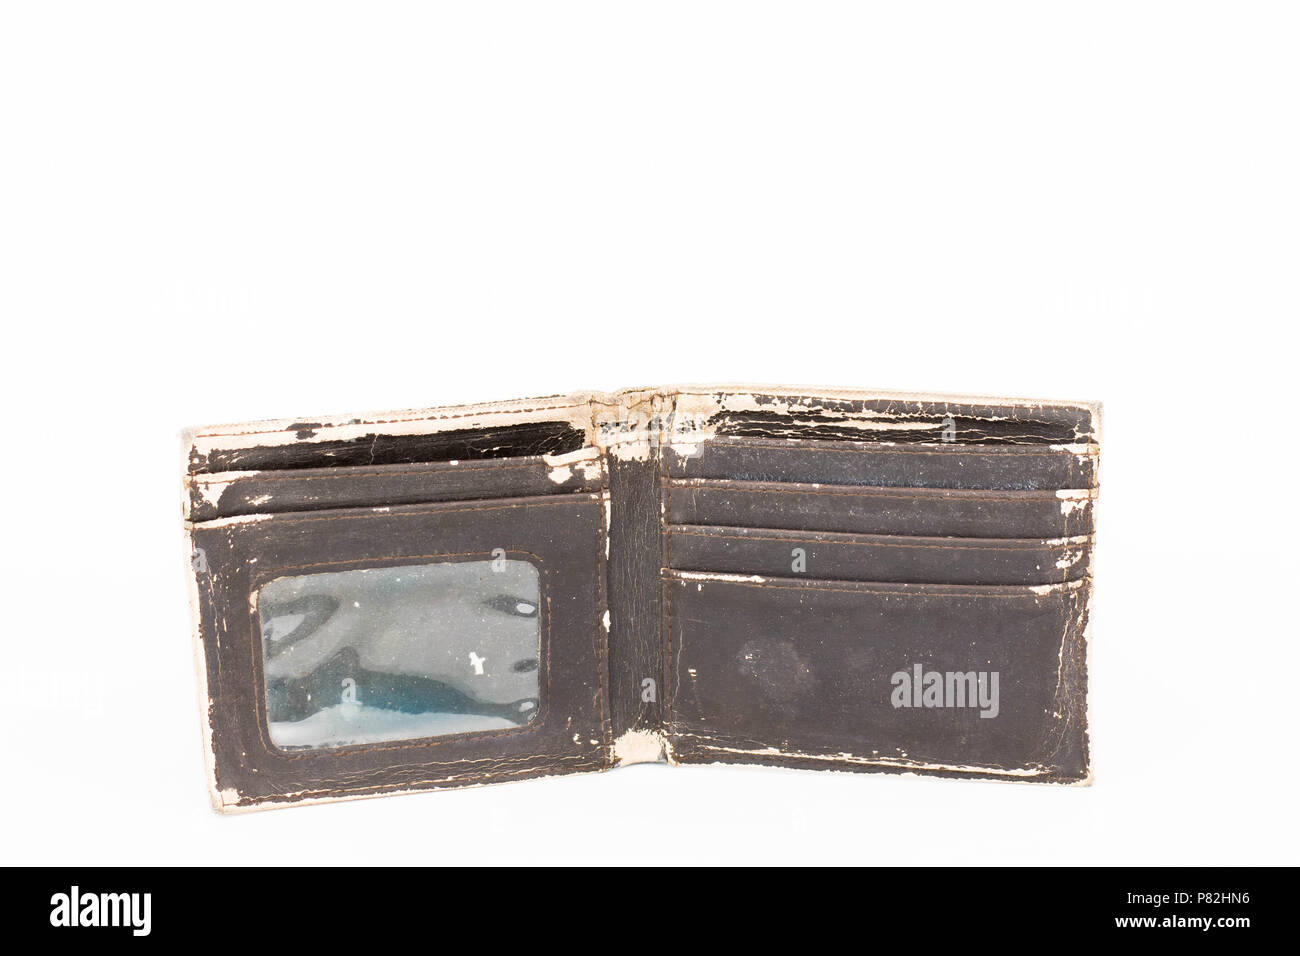 Foto aislado de una vieja billetera de cuero marrón Foto de stock